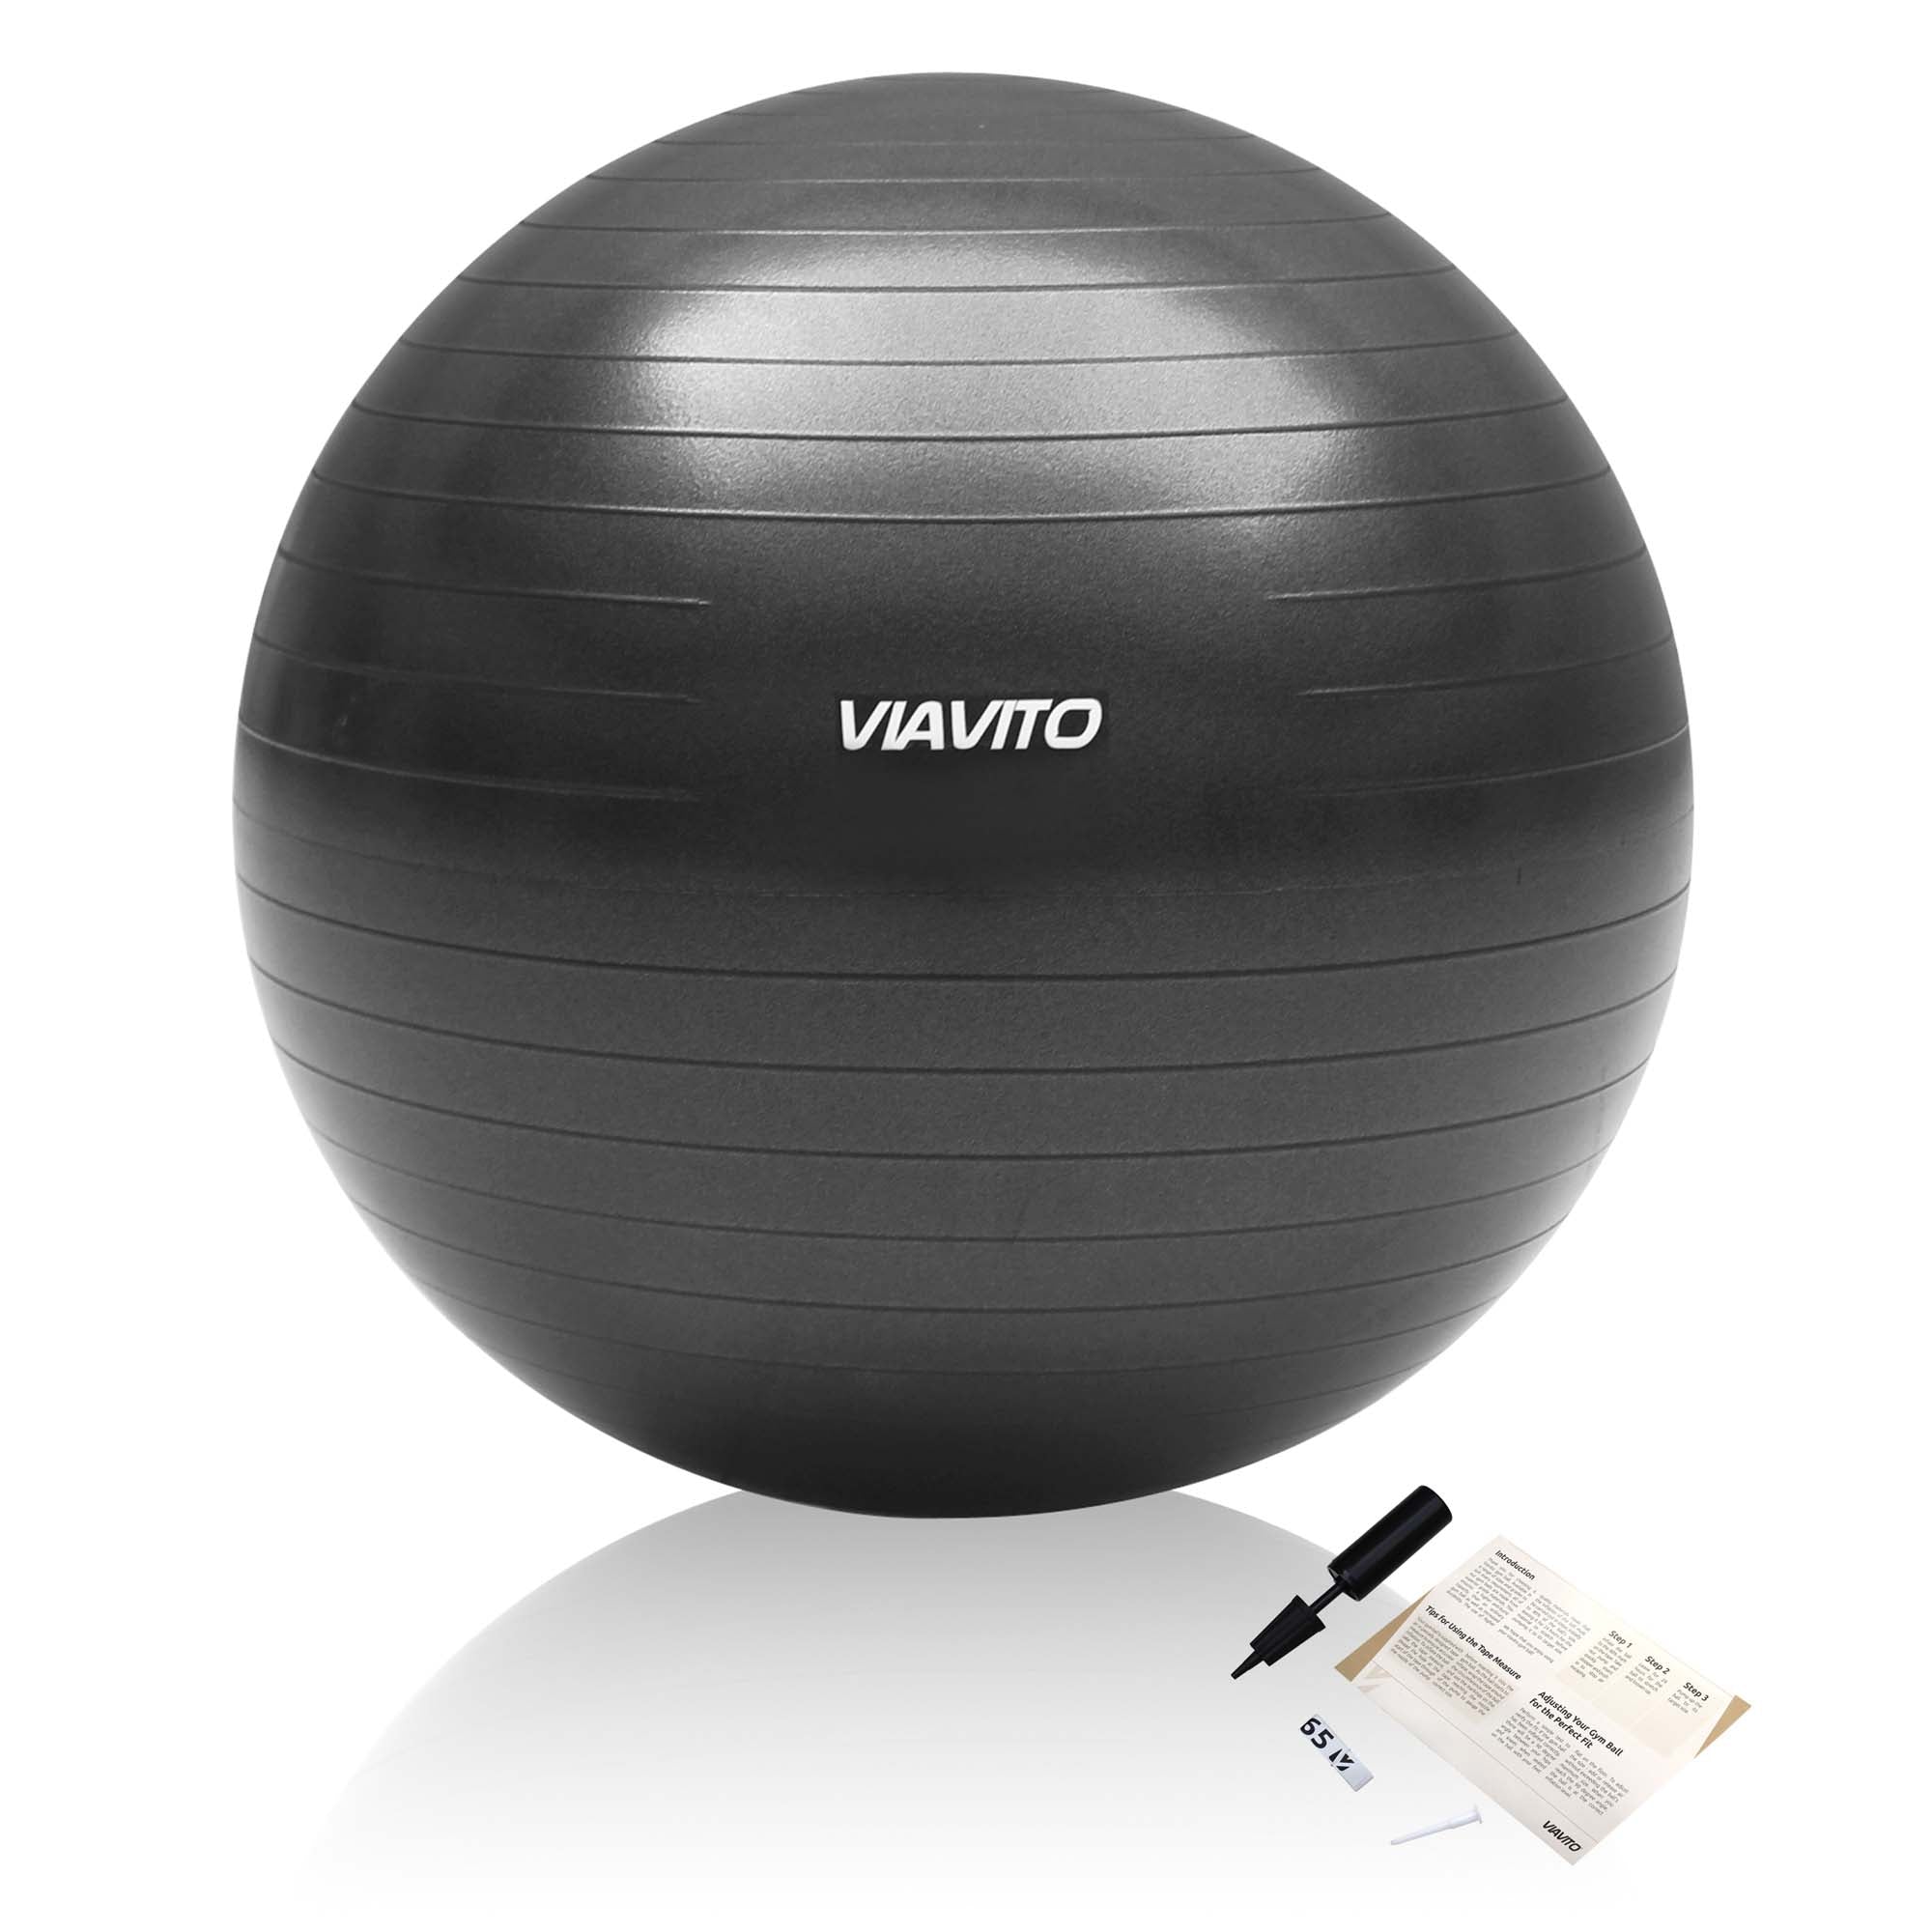 Viavito 500kg Studio Anti-burst 65cm Gym Ball - Champagne